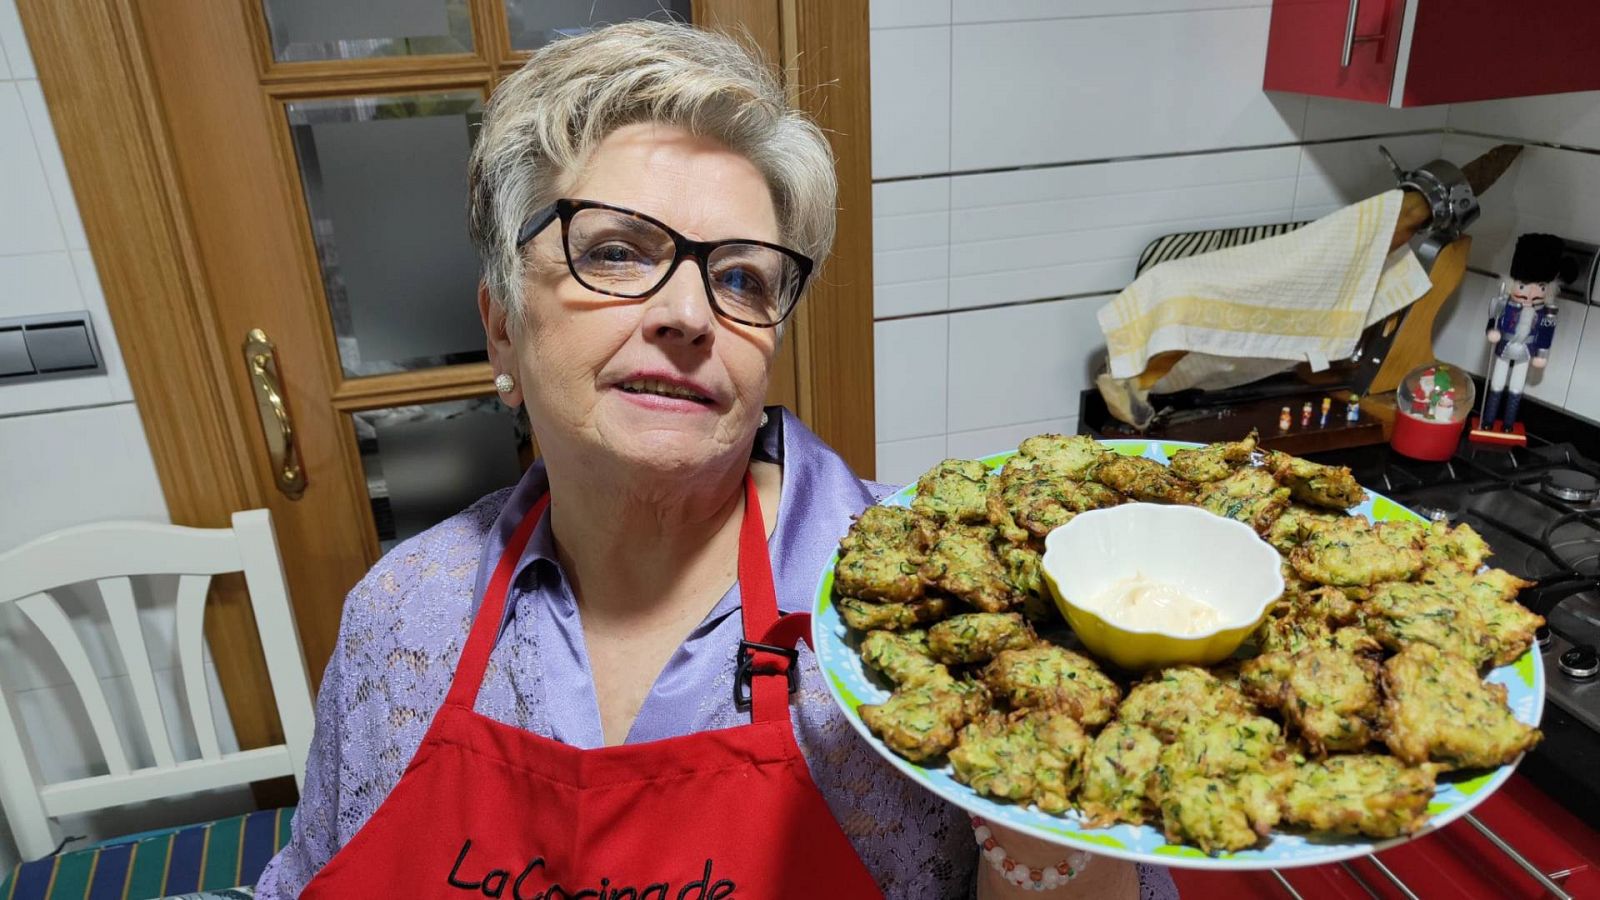 La cocina de Adora: Receta de buñuelos de calabacín y atún - Ver ahora